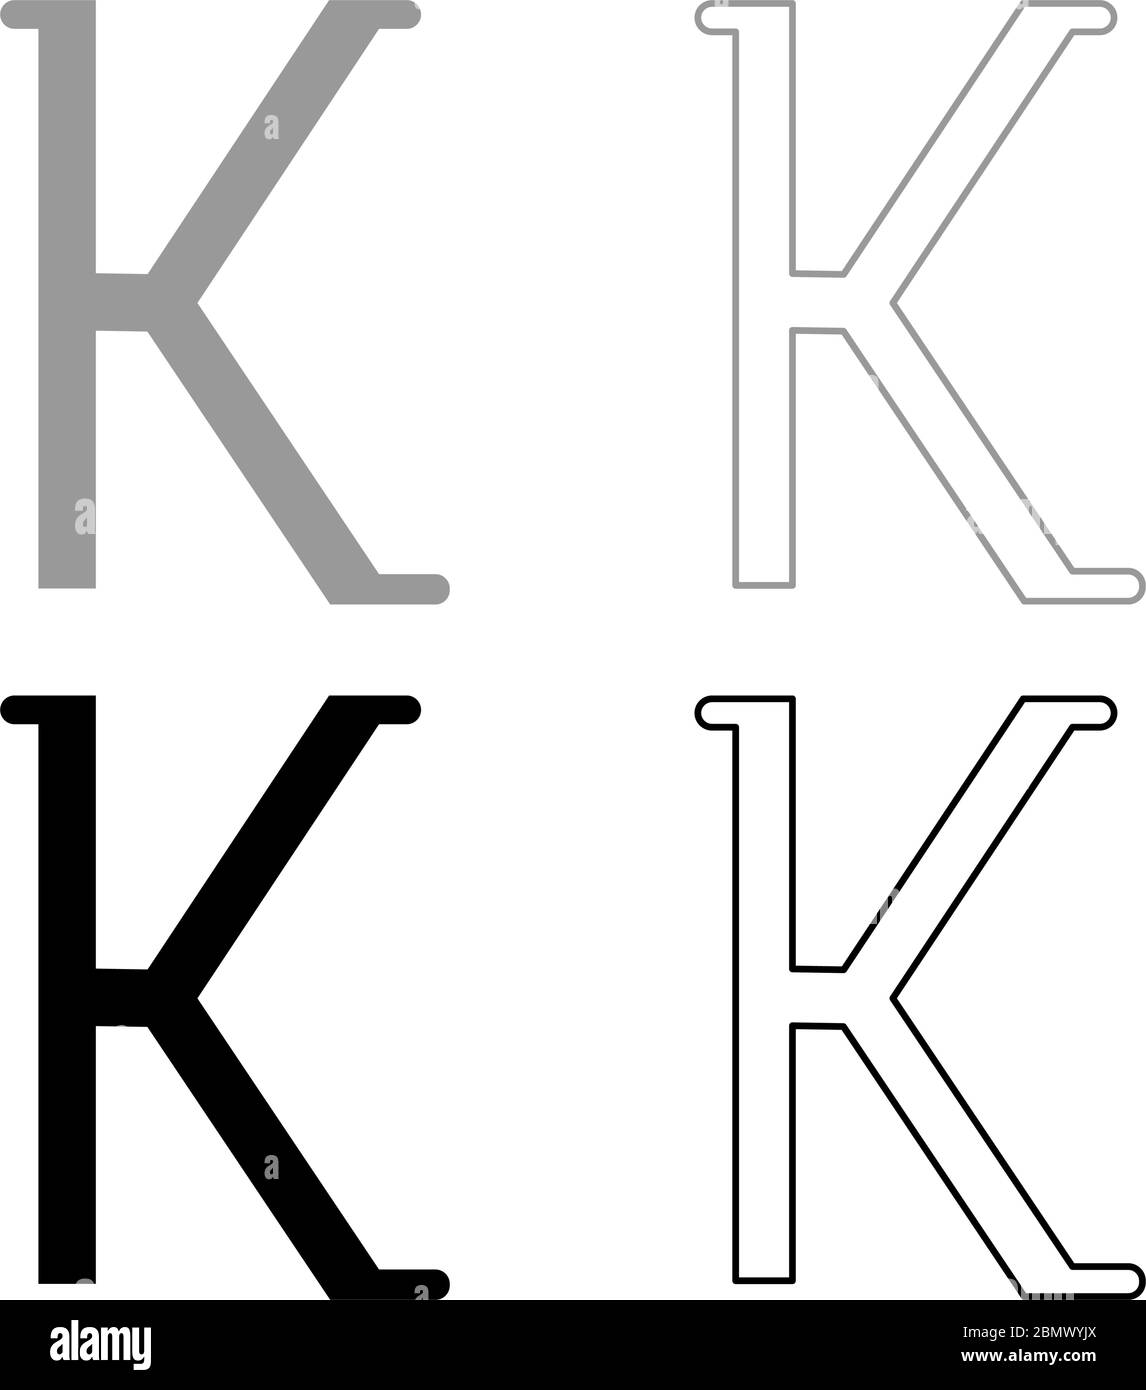 Kappa griechisch Symbol kleiner Buchstabe Kleinbuchstaben Schrift Symbol  Umriss Set schwarz grau Farbe Vektor Illustration flach Stil einfaches Bild  Stock-Vektorgrafik - Alamy